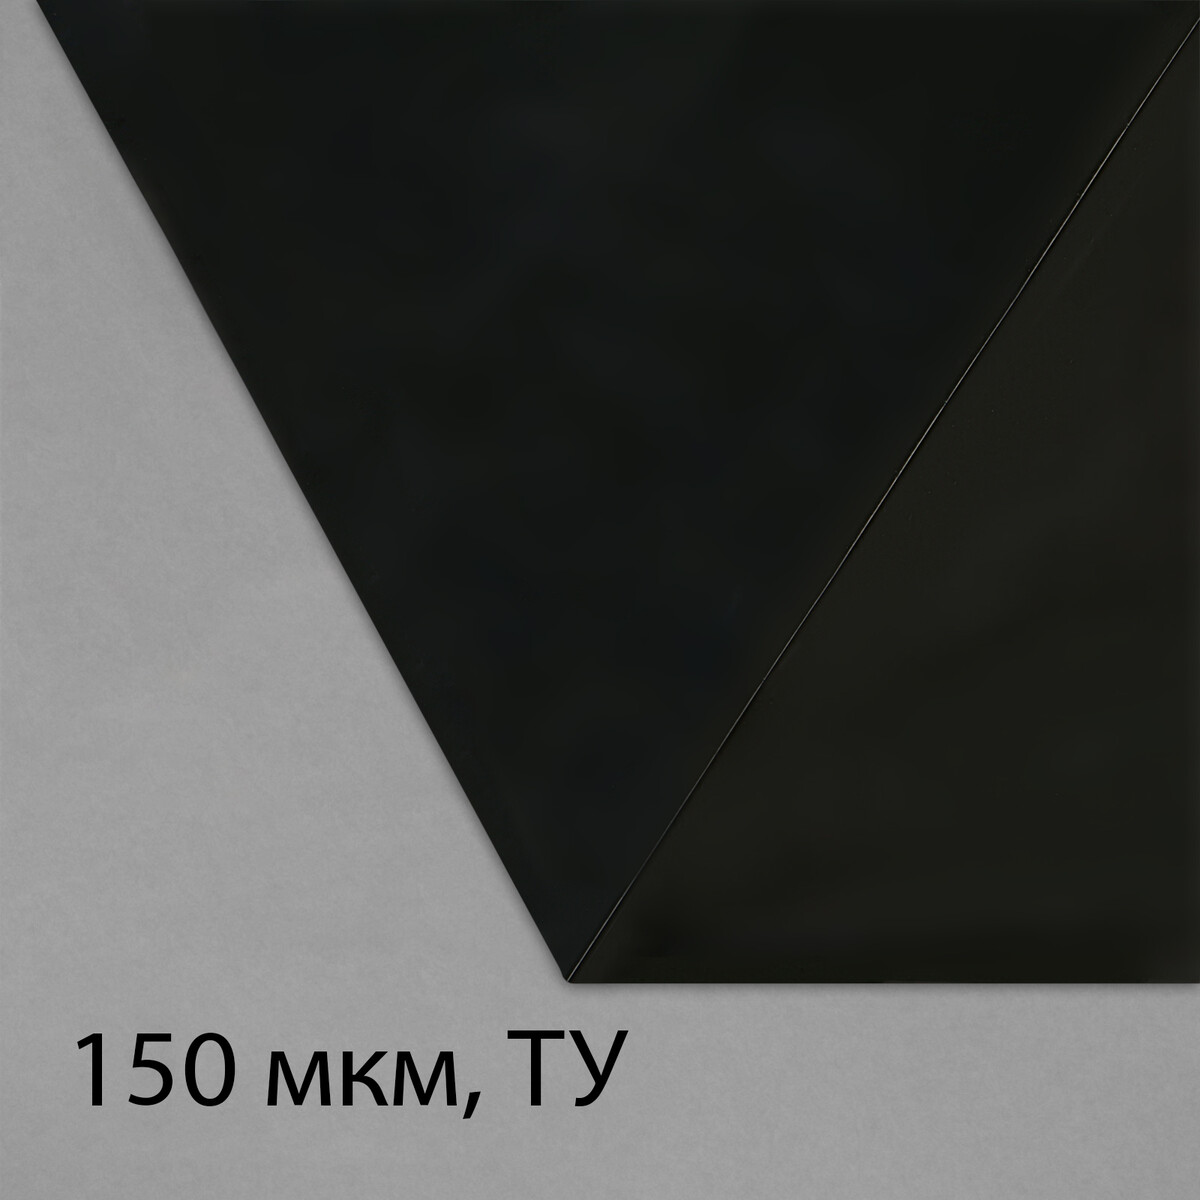 Пленка из полиэтилена, техническая, толщина 150 мкм, черная, 5 × 3 м, рукав (1.5 м × 2), эконом 50%, для дома и сада пленка полиэтиленовая техническая 80 мкм черная длина 10 м ширина 3 м рукав 1 5 м × 2 эконом 50%